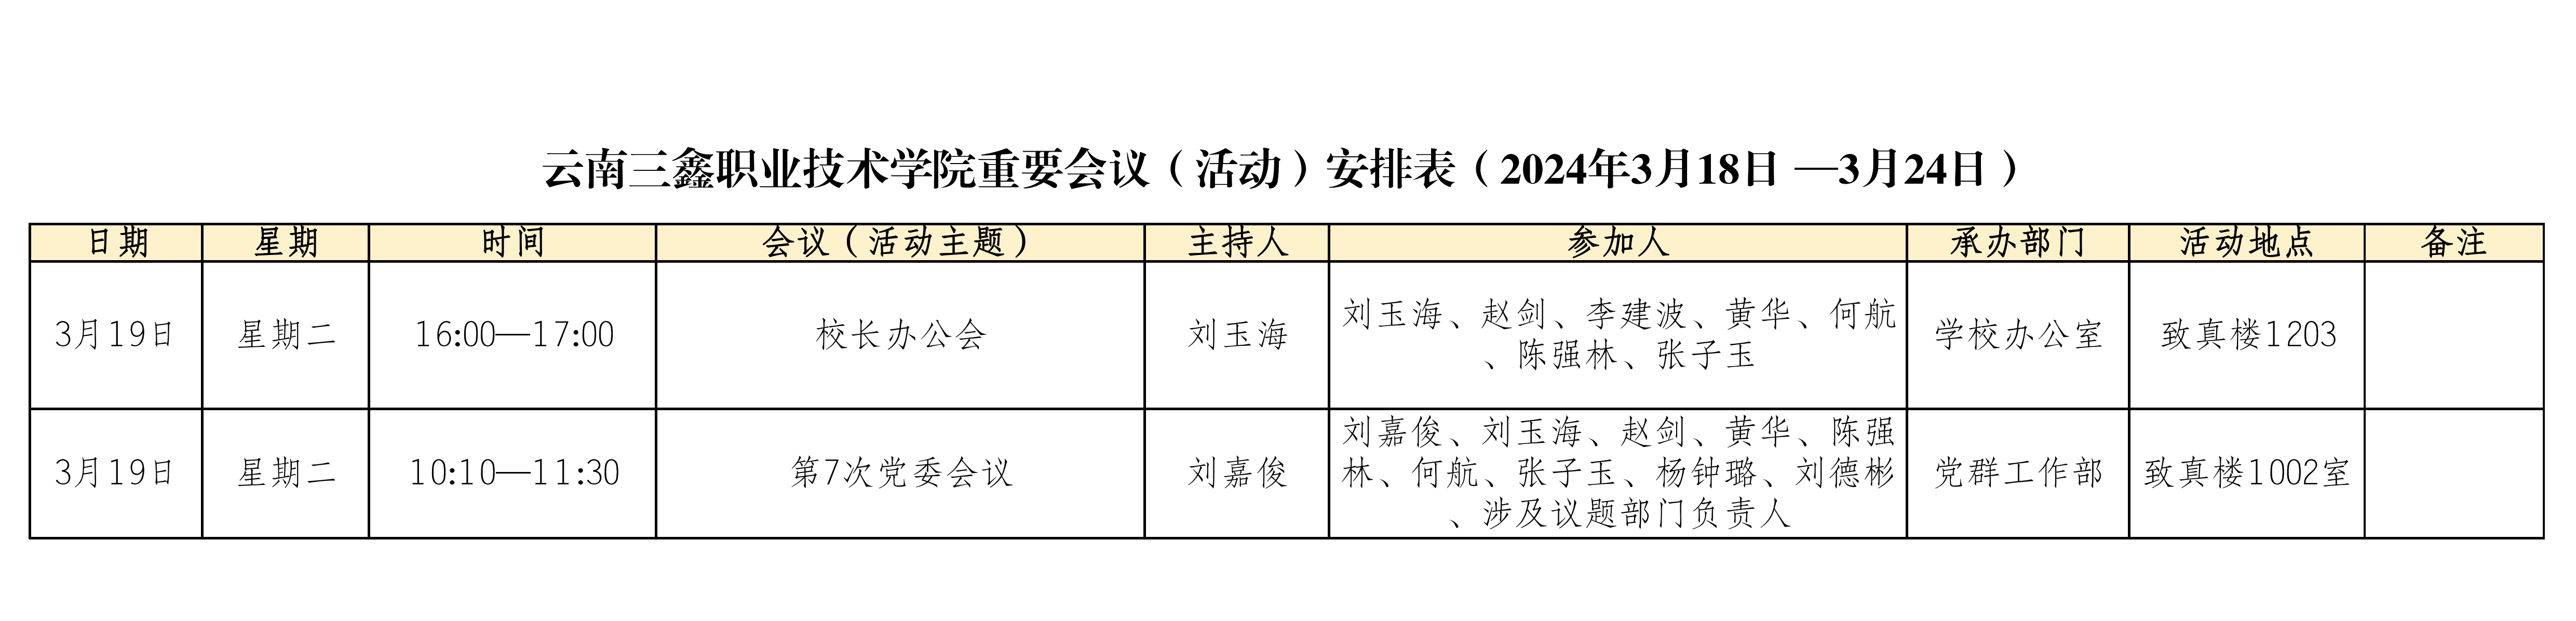 云南三鑫职业技术学院重要会议（活动）安排表（2024年3月18日 —3月24日）